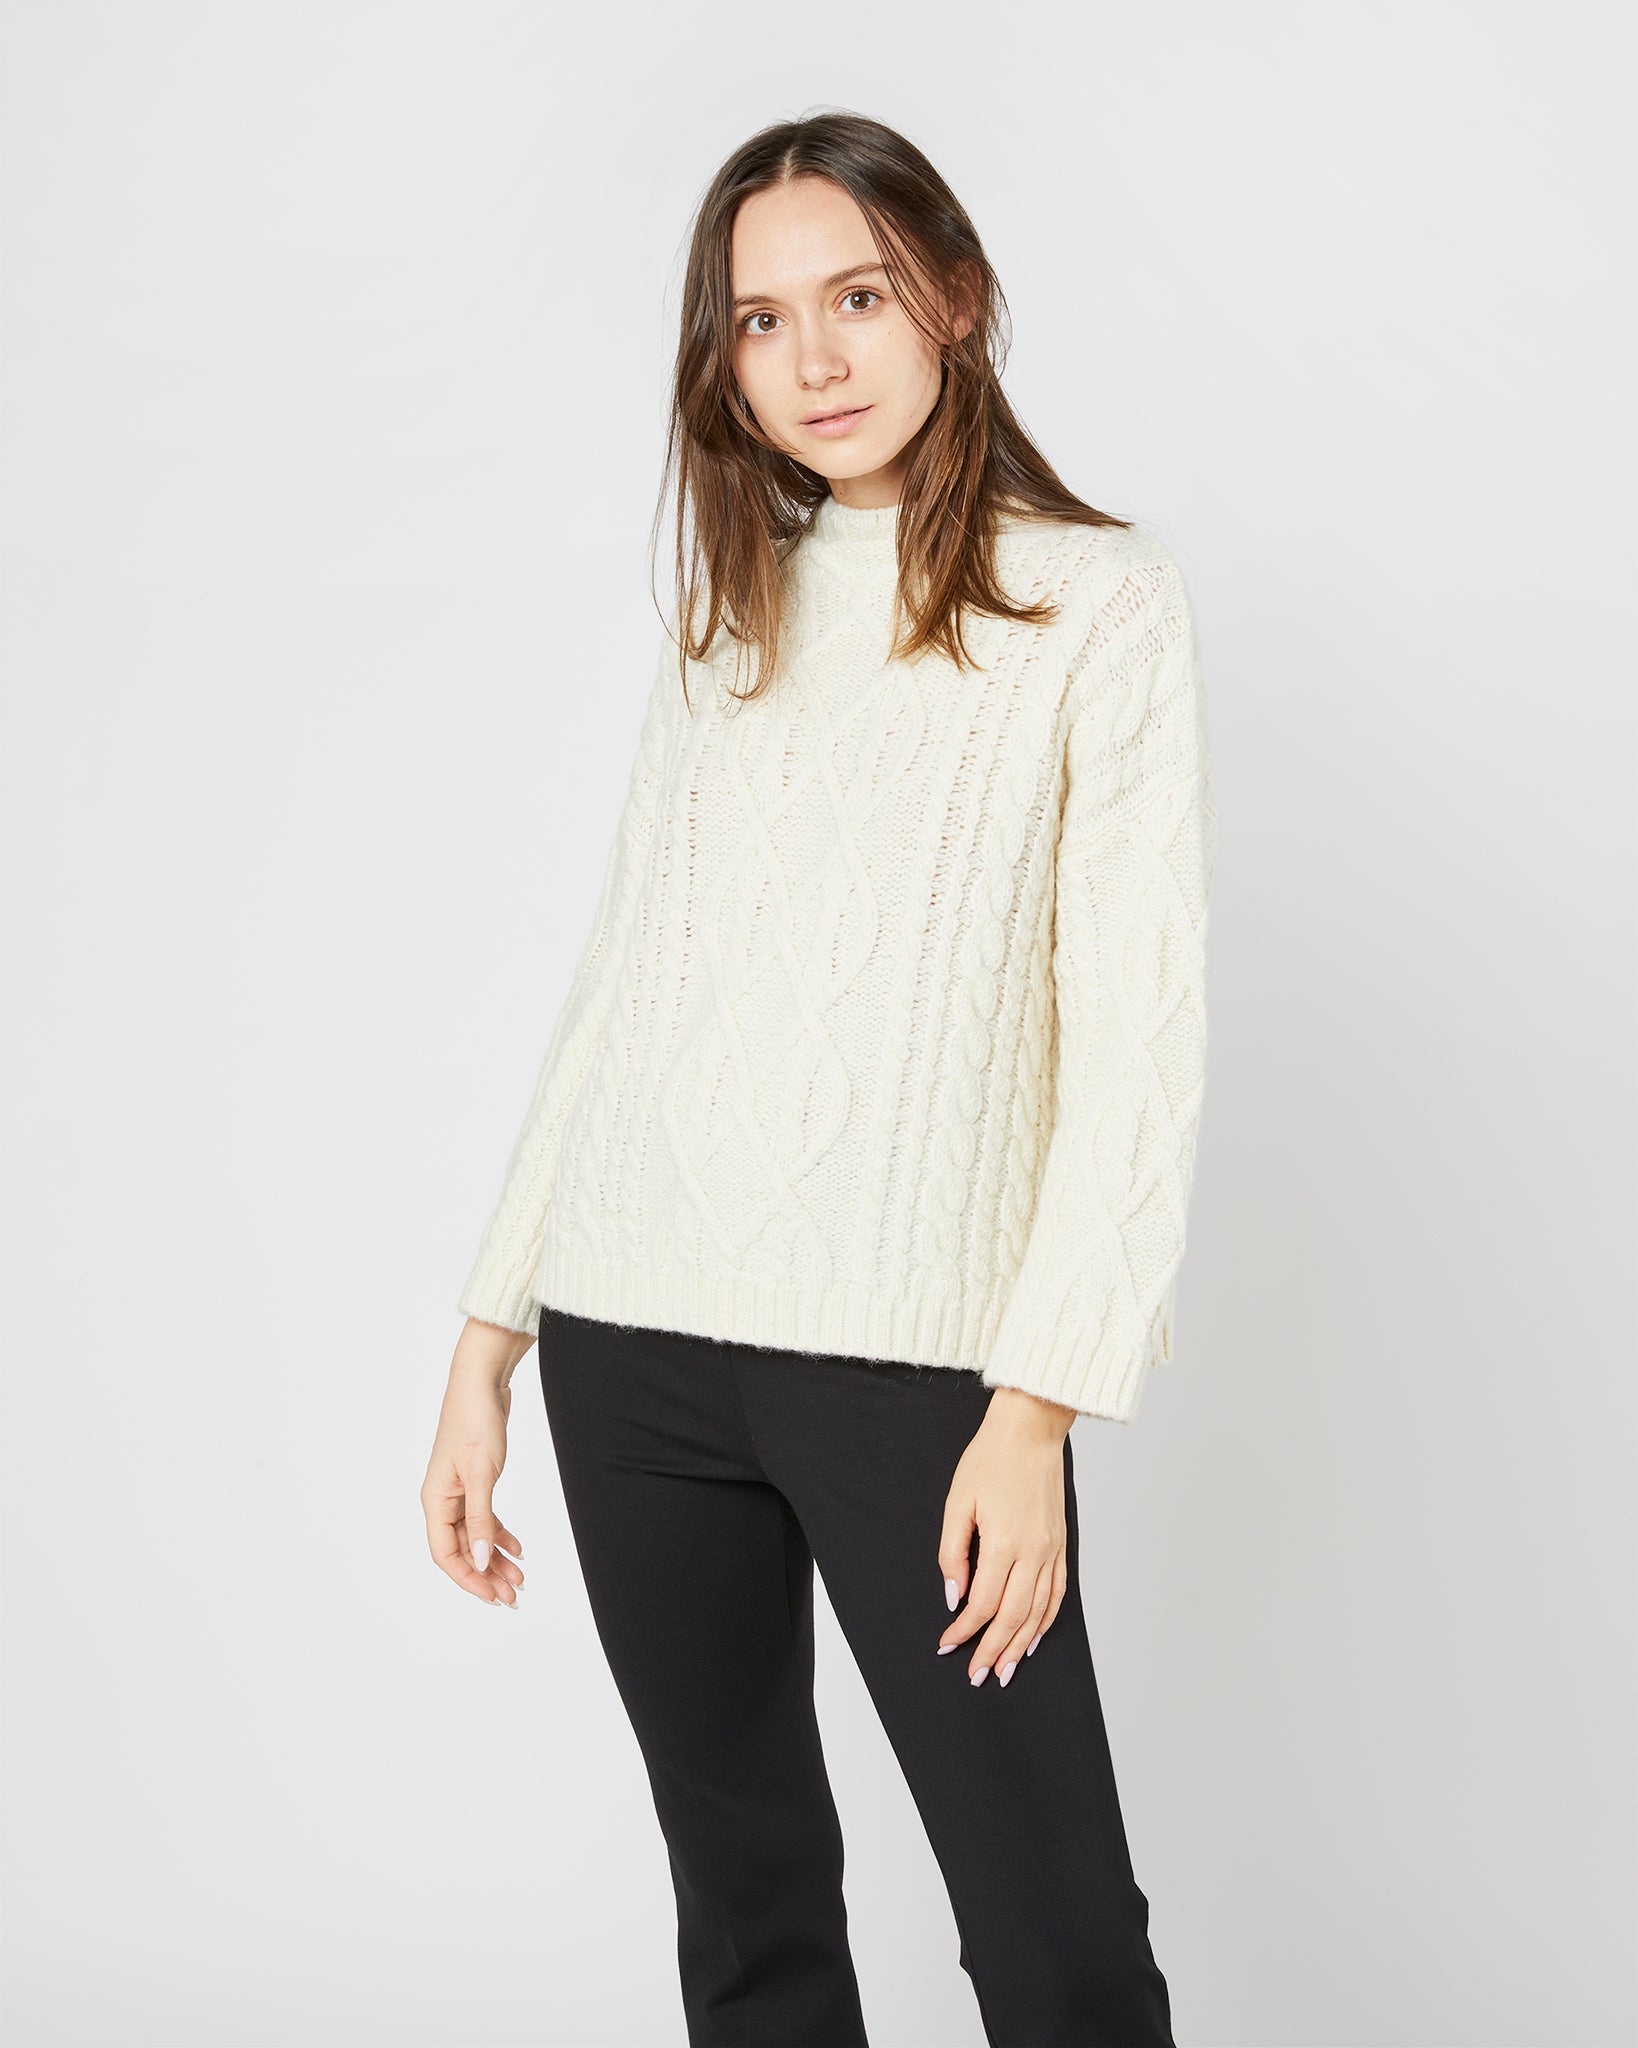 Jocelyn Aran Sweater in Ivory Wool/Baby Alpaca Blend